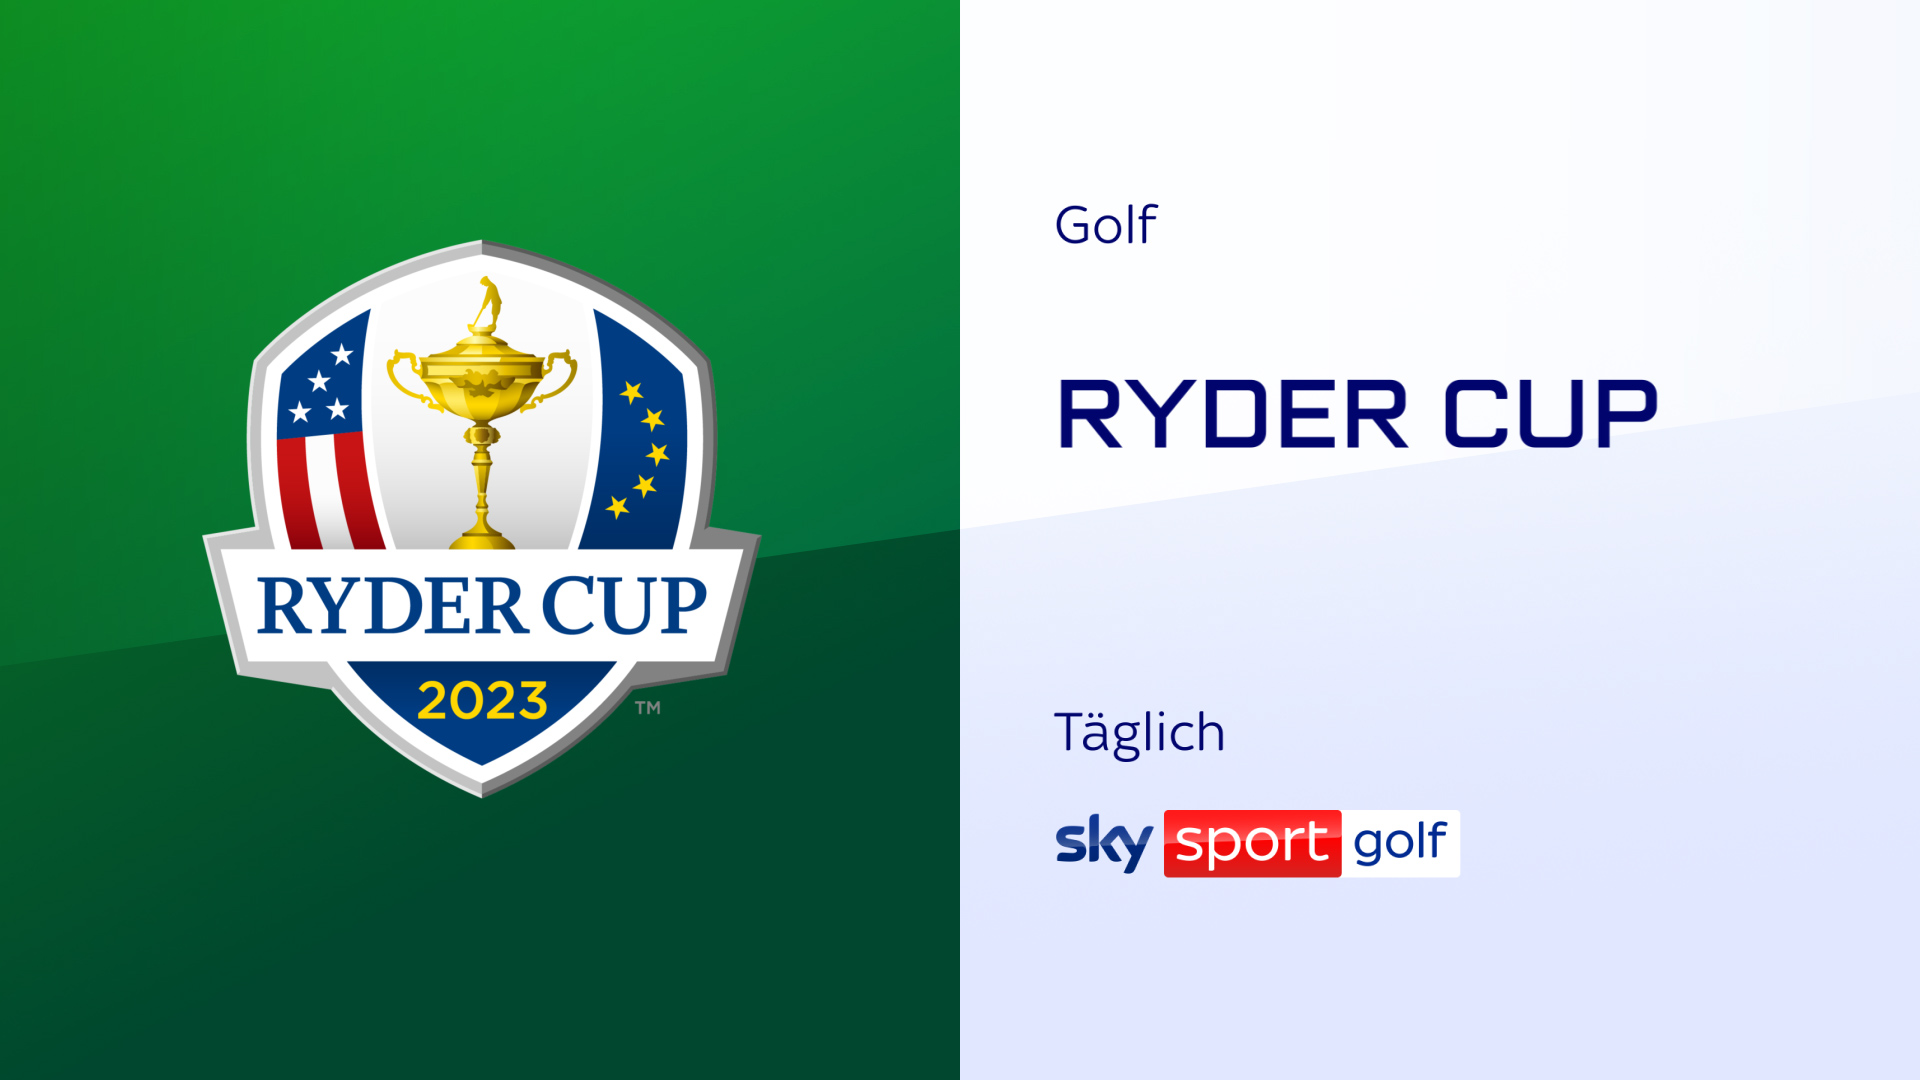 Europa gegen die USA Sky Sport präsentiert den Ryder Cup 2023 live und exklusiv Presseportal